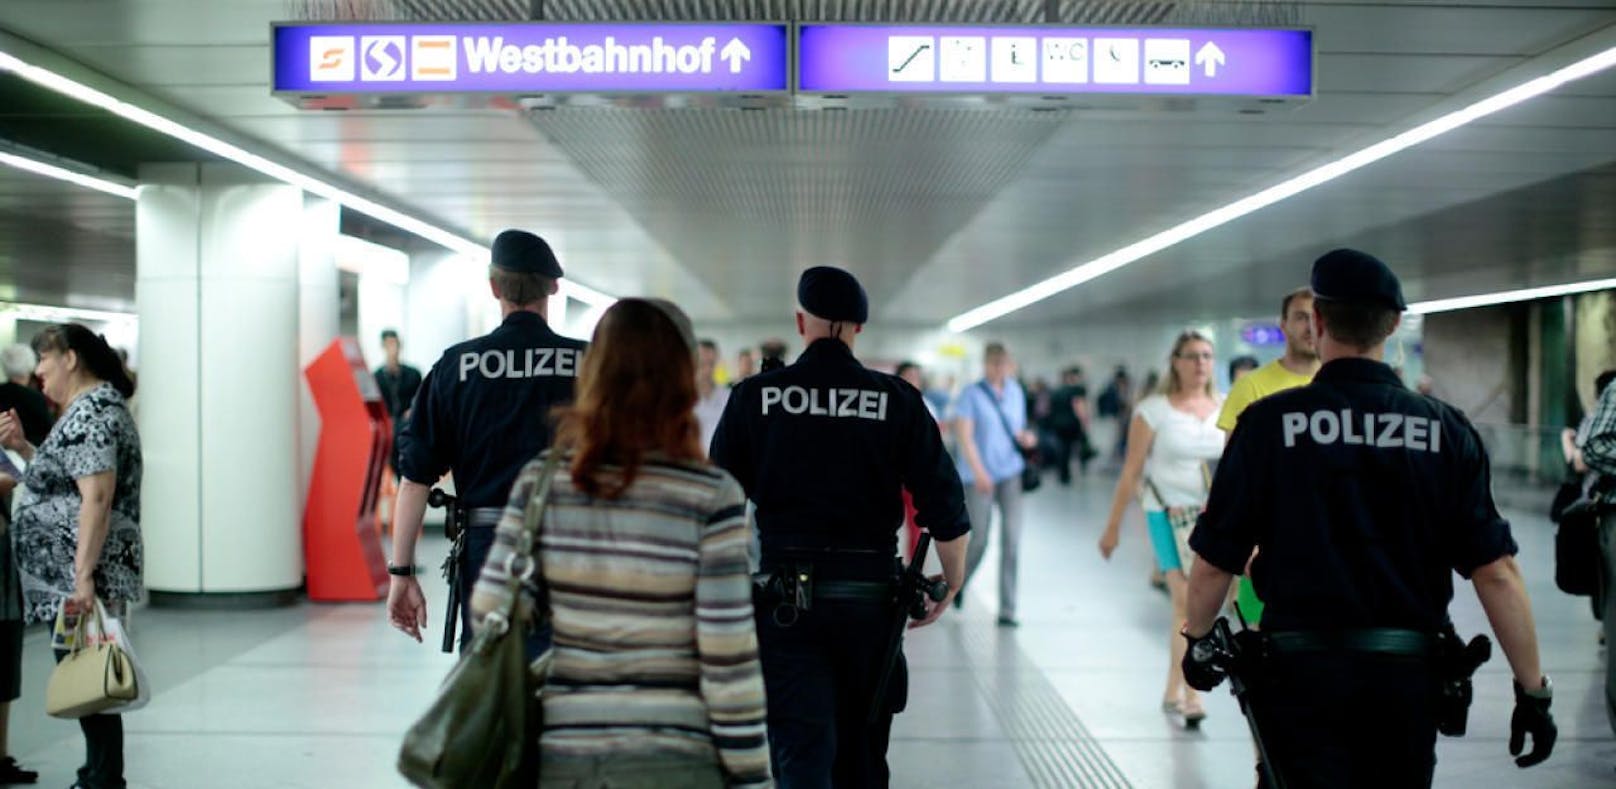 Die Polizei bleibt am Westbahnhof aktiv.